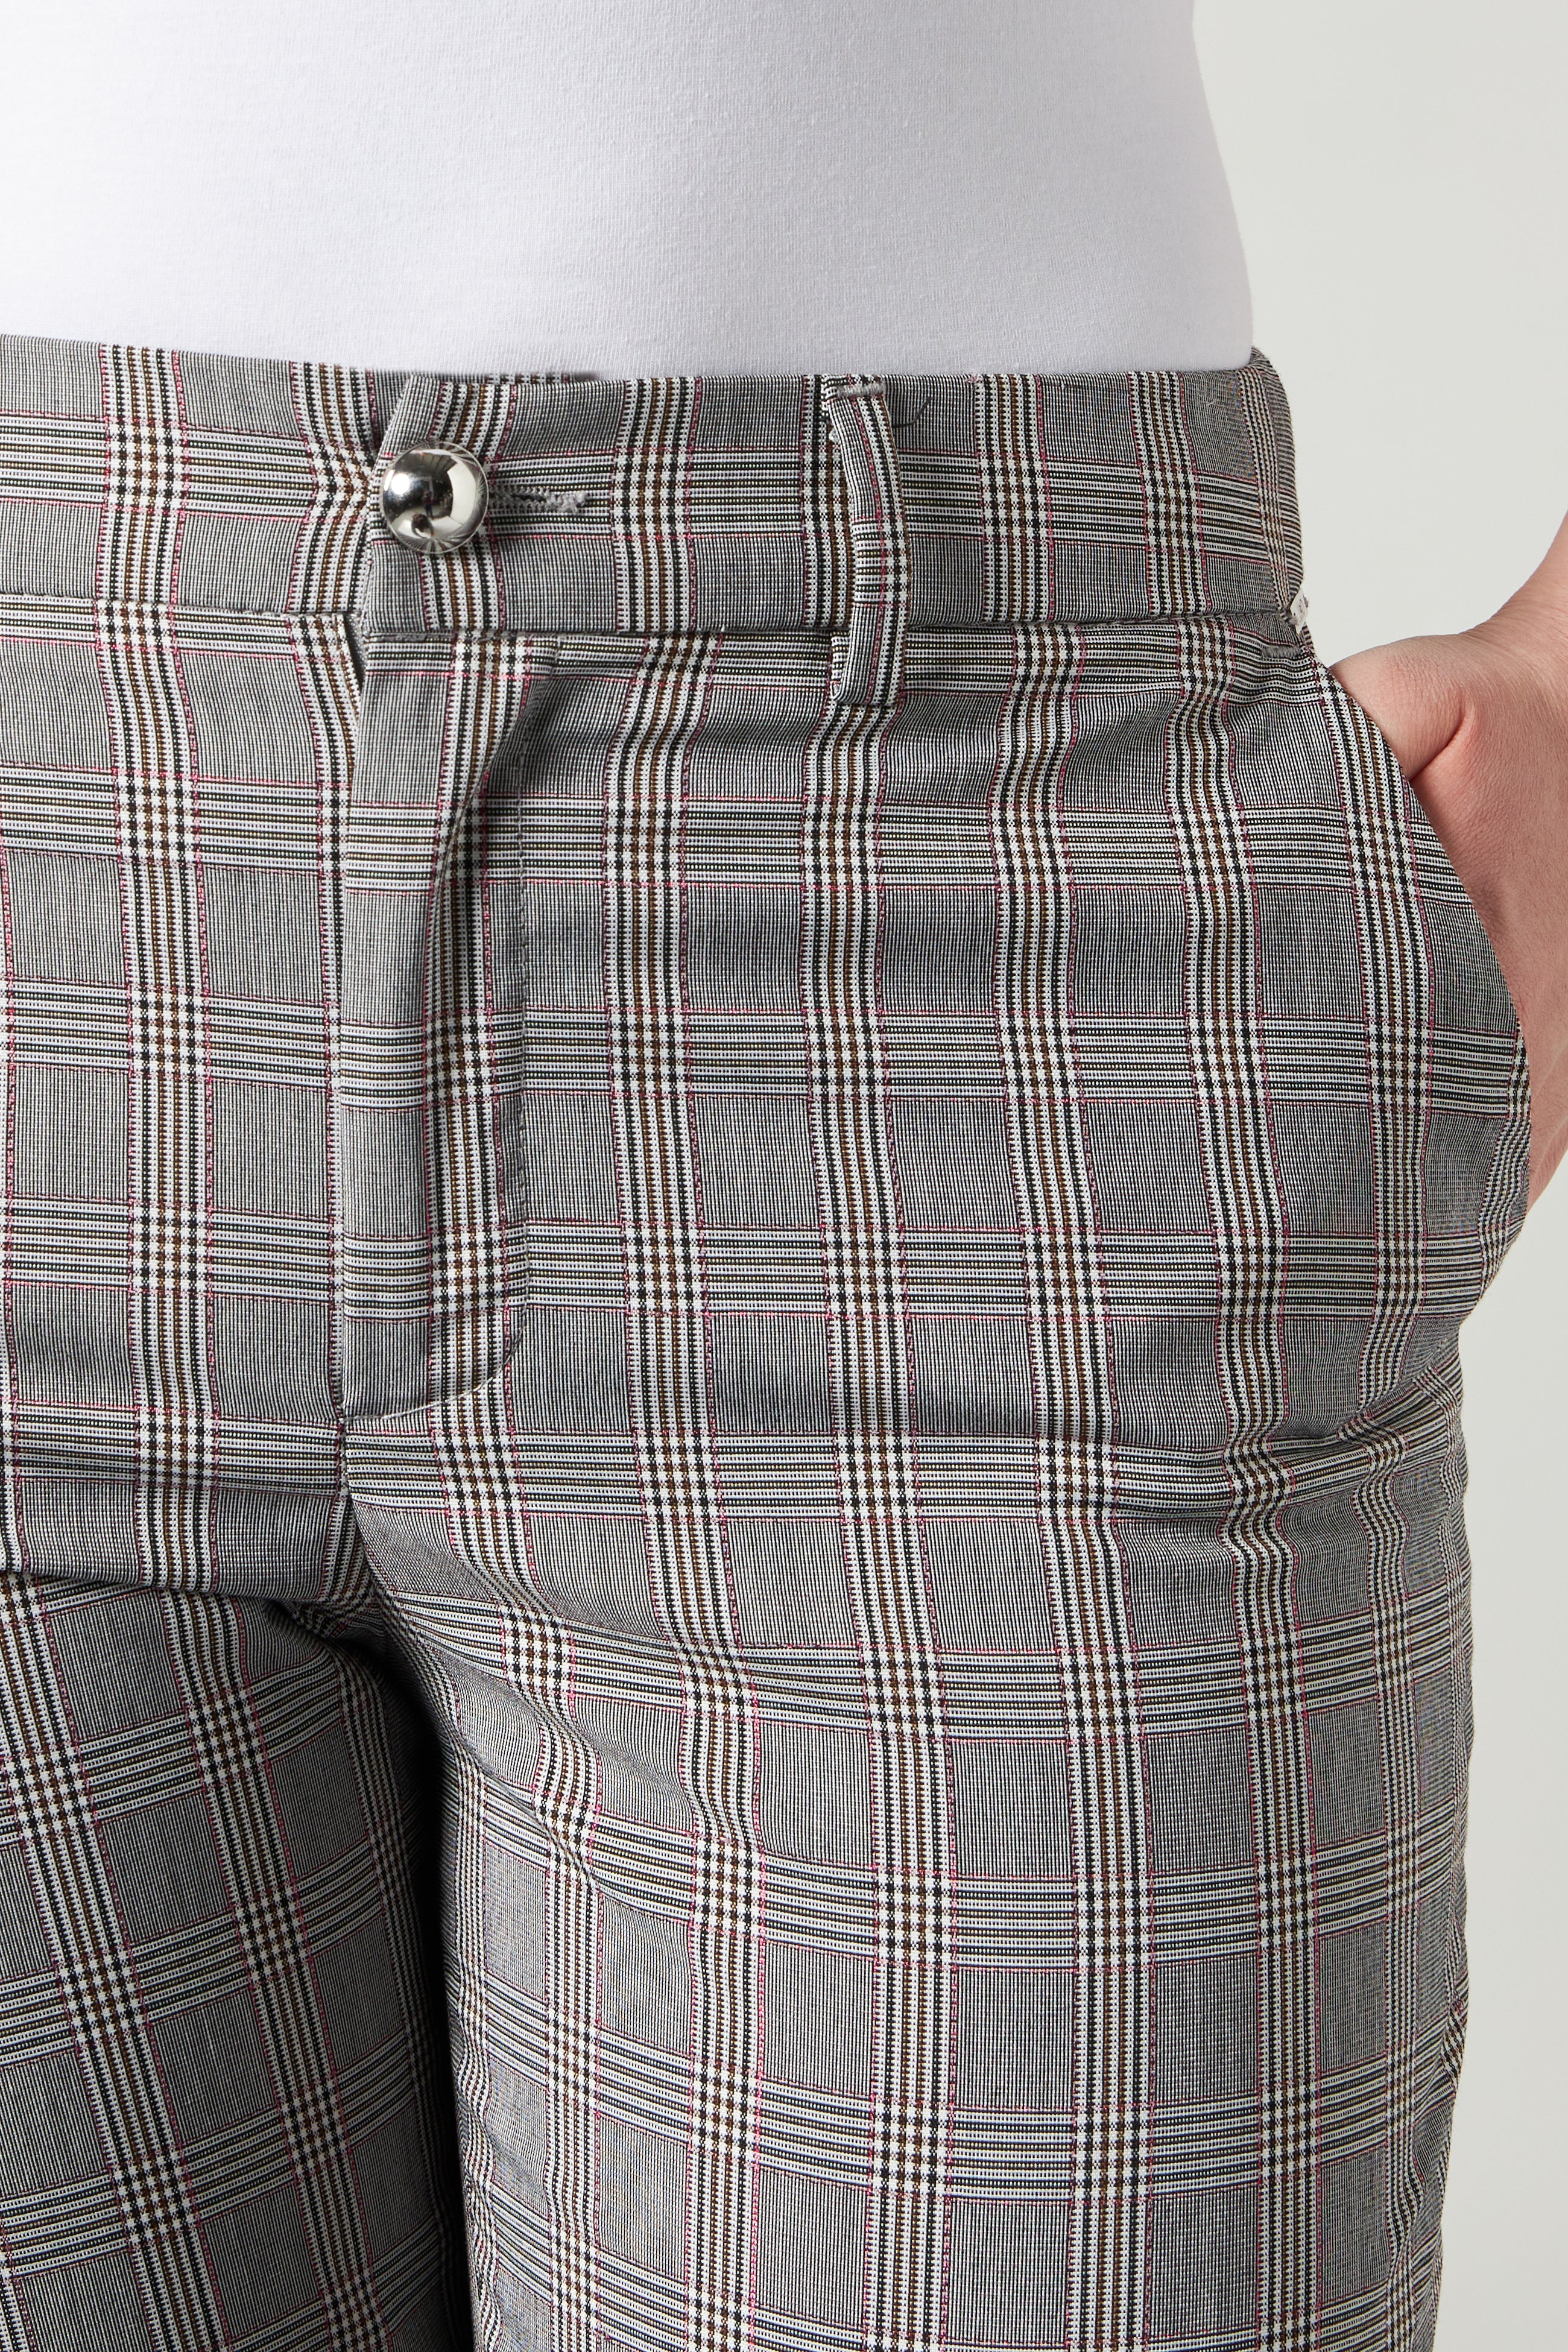 LIU JO Pantalone Classico Check